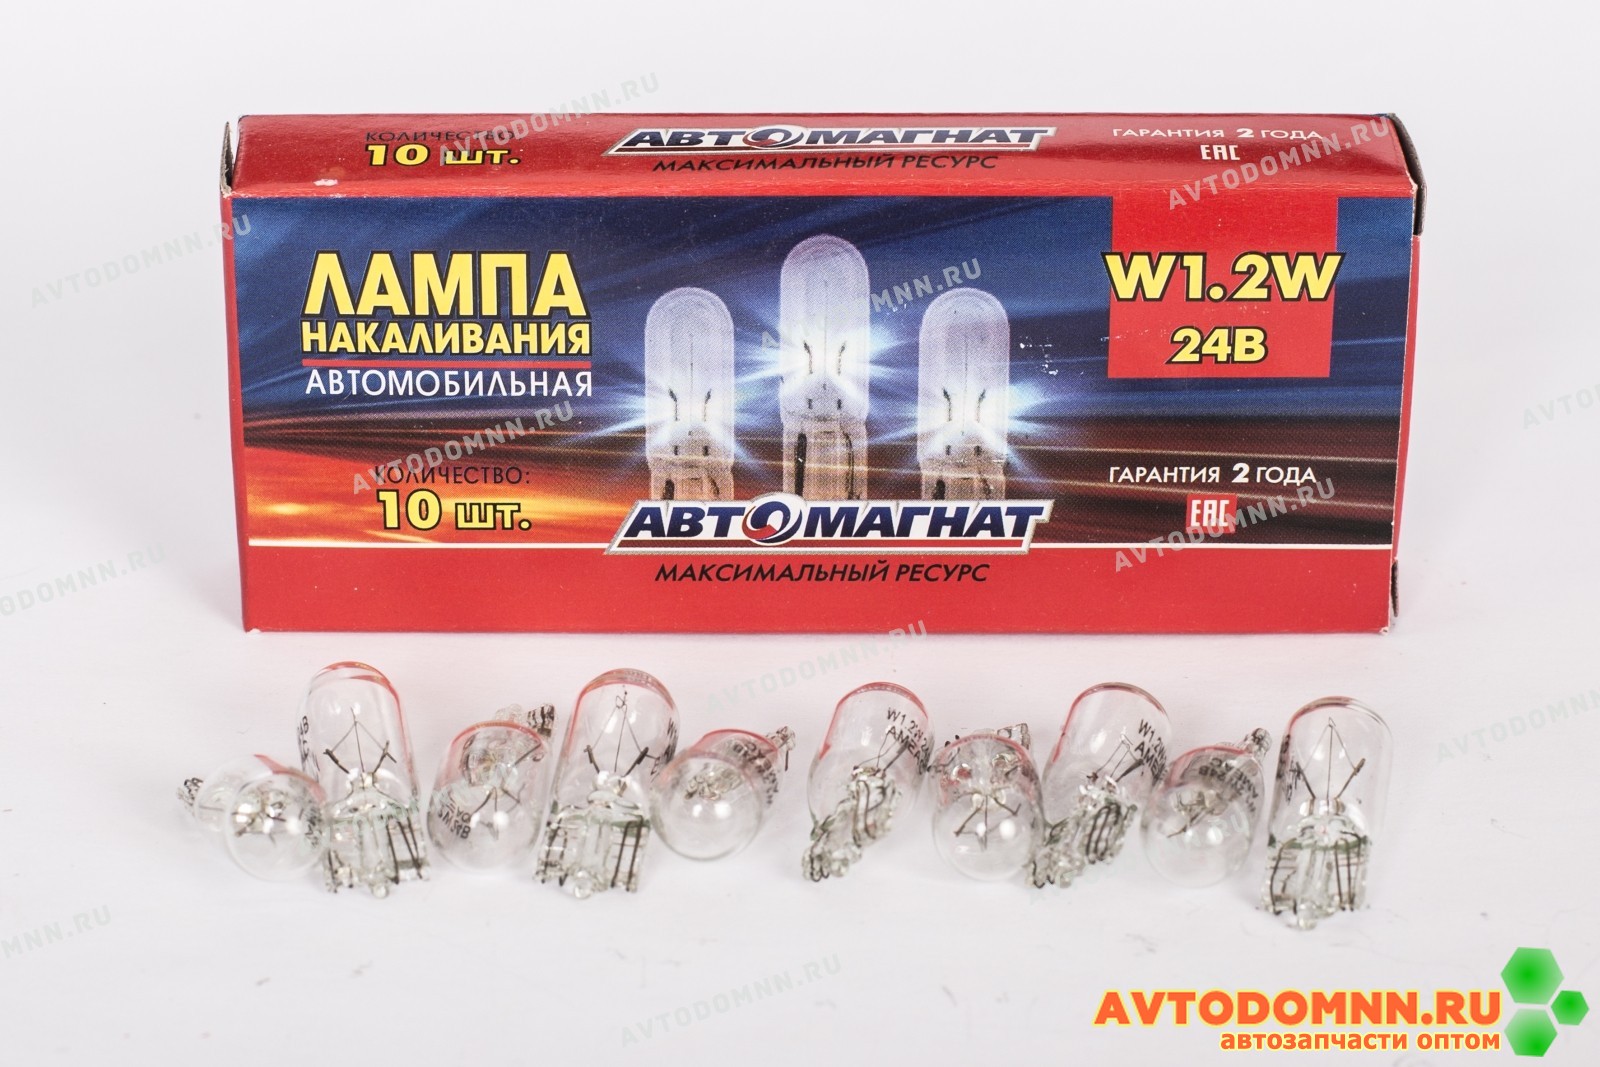 24V W1.2W W2x4.6d бесцокольная лампу подсветки приборов. (24V-вольтаж, W1.2W-тип лампы, W2x4.6d-тип цоколя) (аналог: А24-1, 2 б/ц)